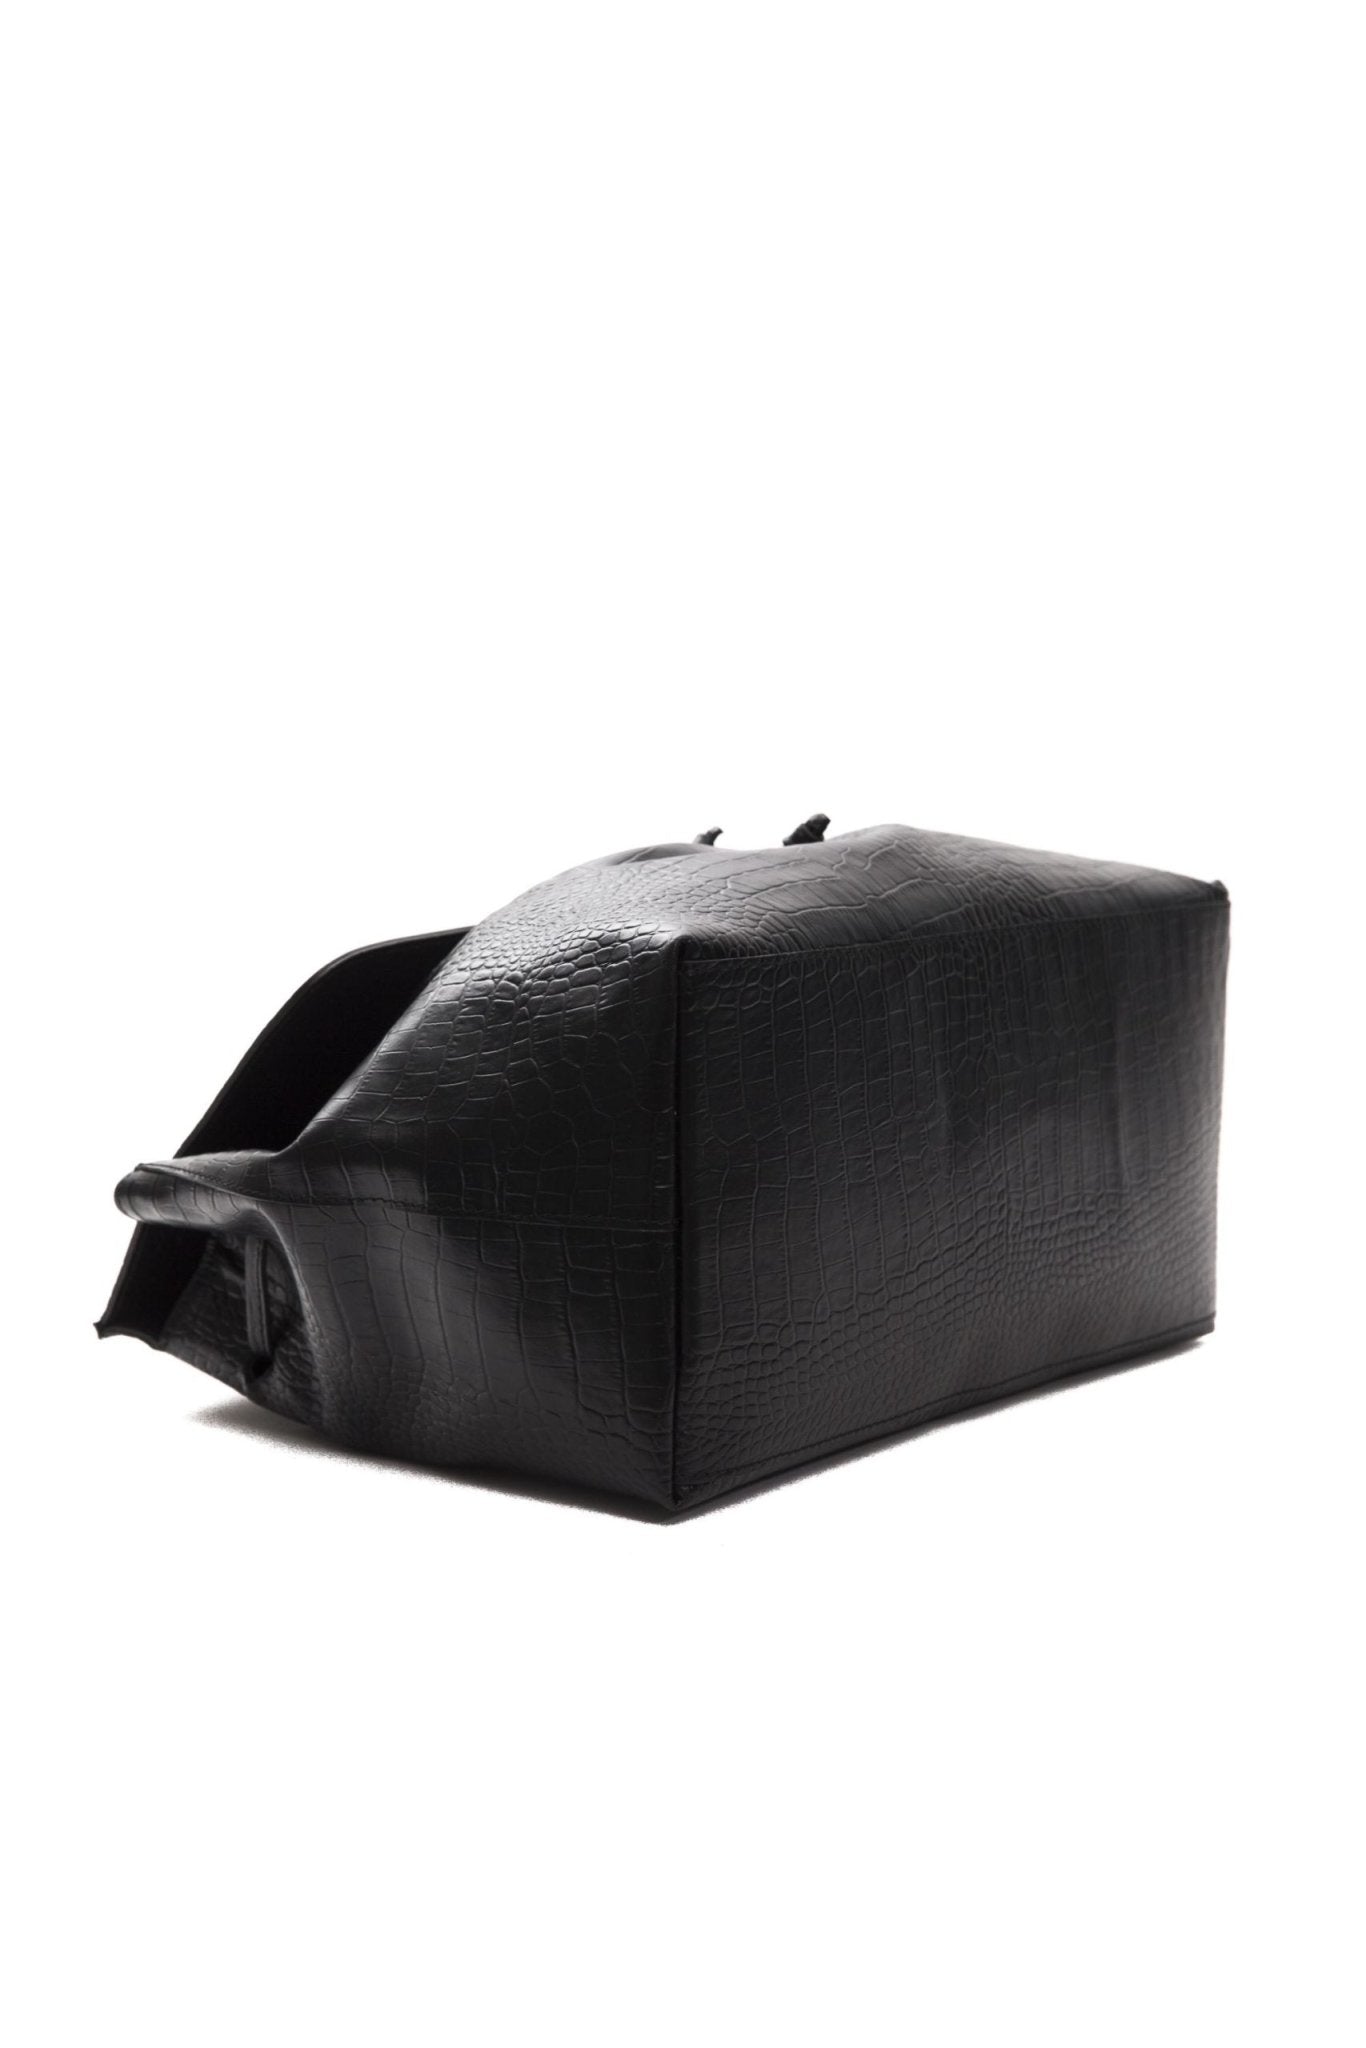 Pompei Donatella Black Leather Handbag - Fizigo